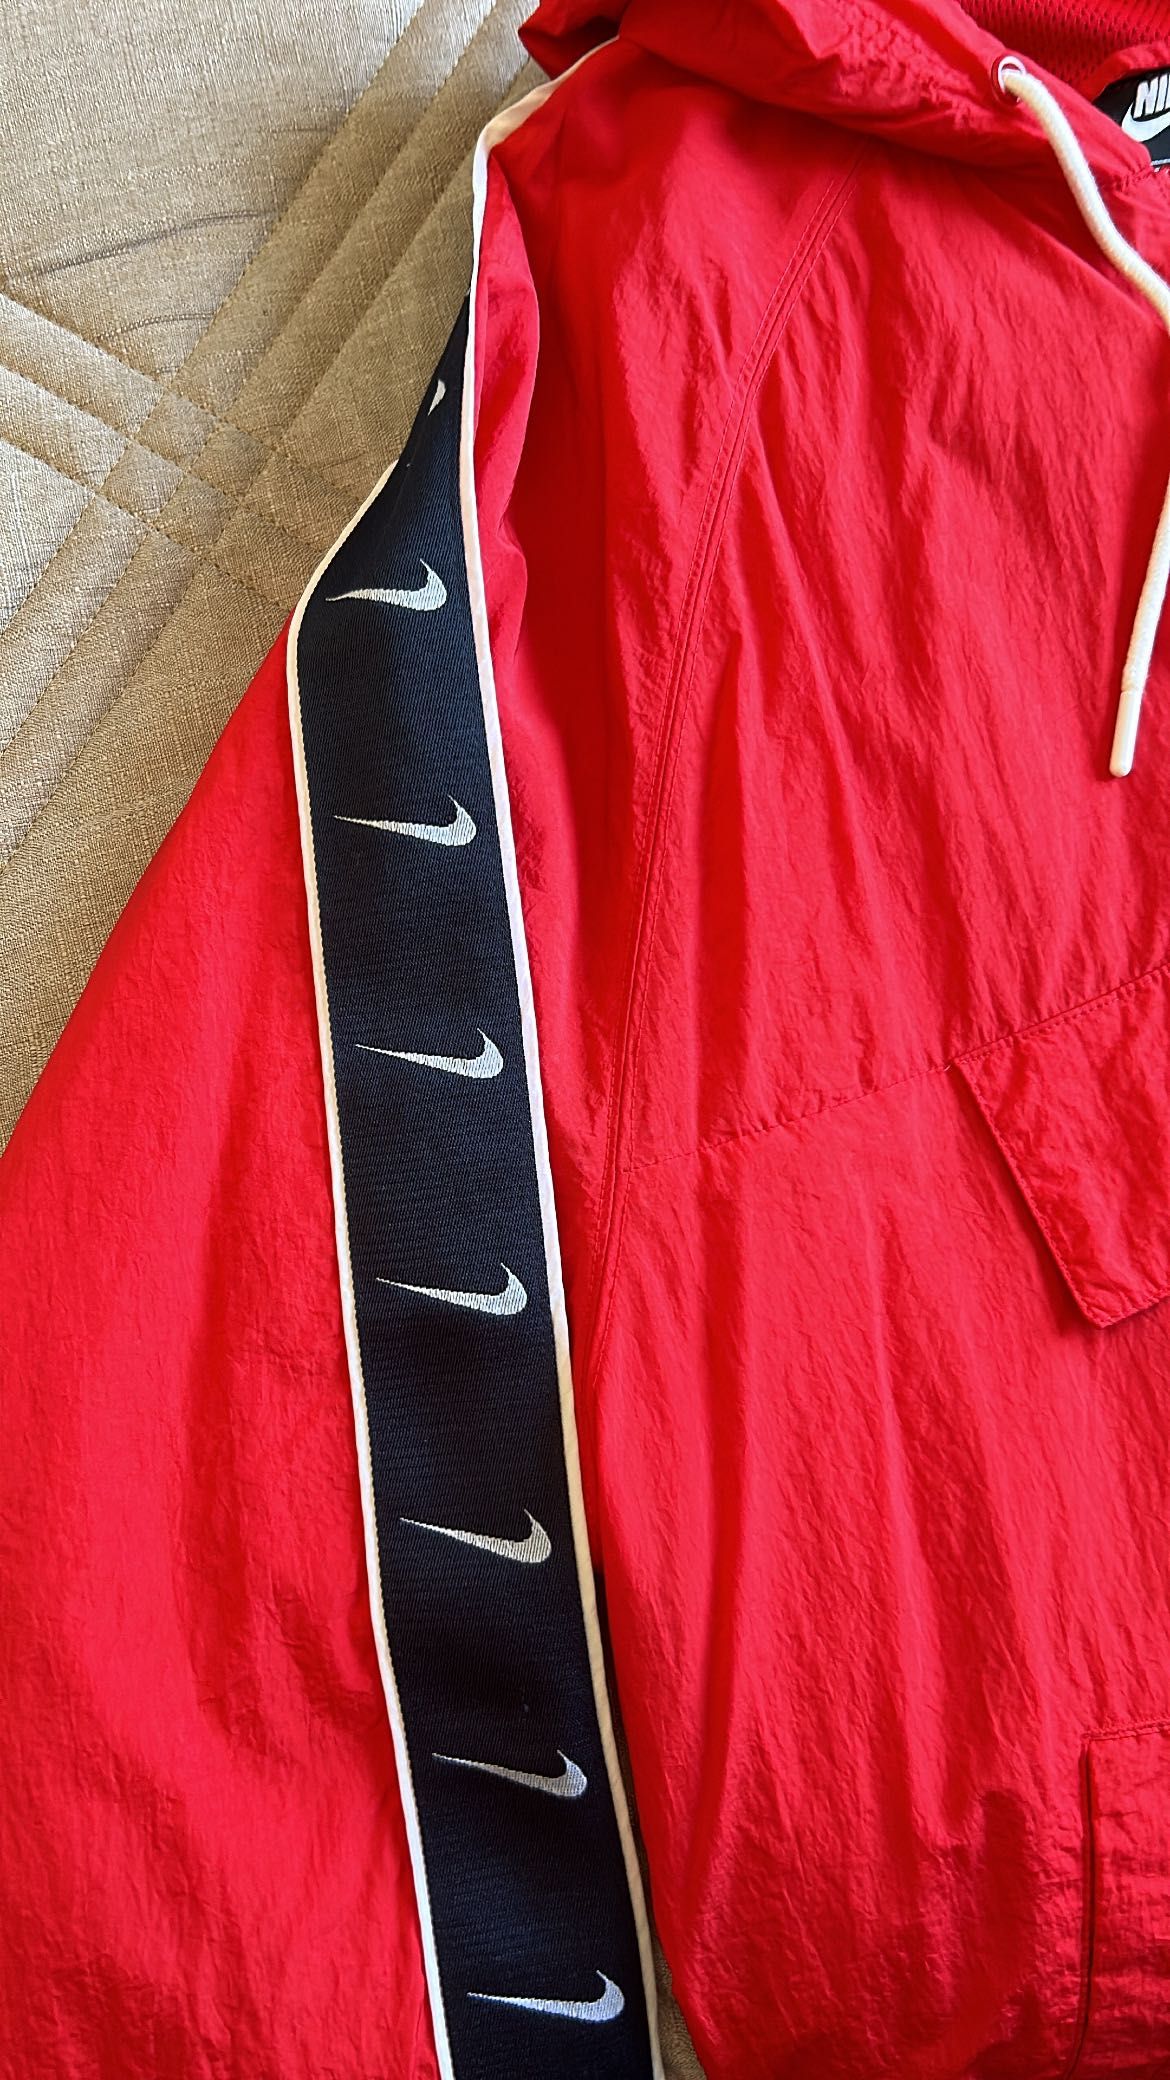 Casaco vermelho Nike com pormenores nas mangas